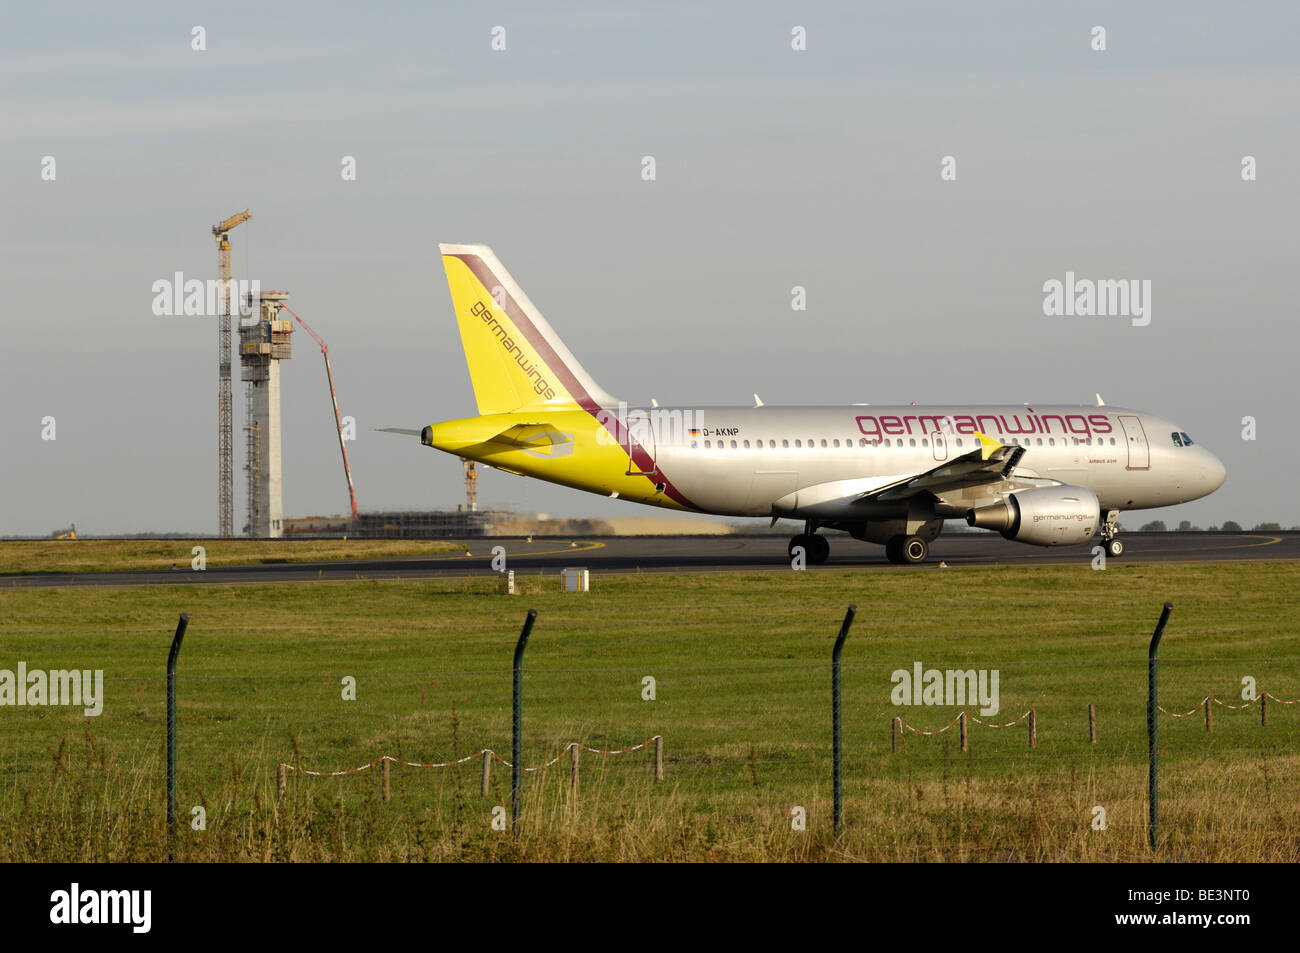 Germanwings Airbus A319 at Berlin Schonefeld Airport Stock Photo